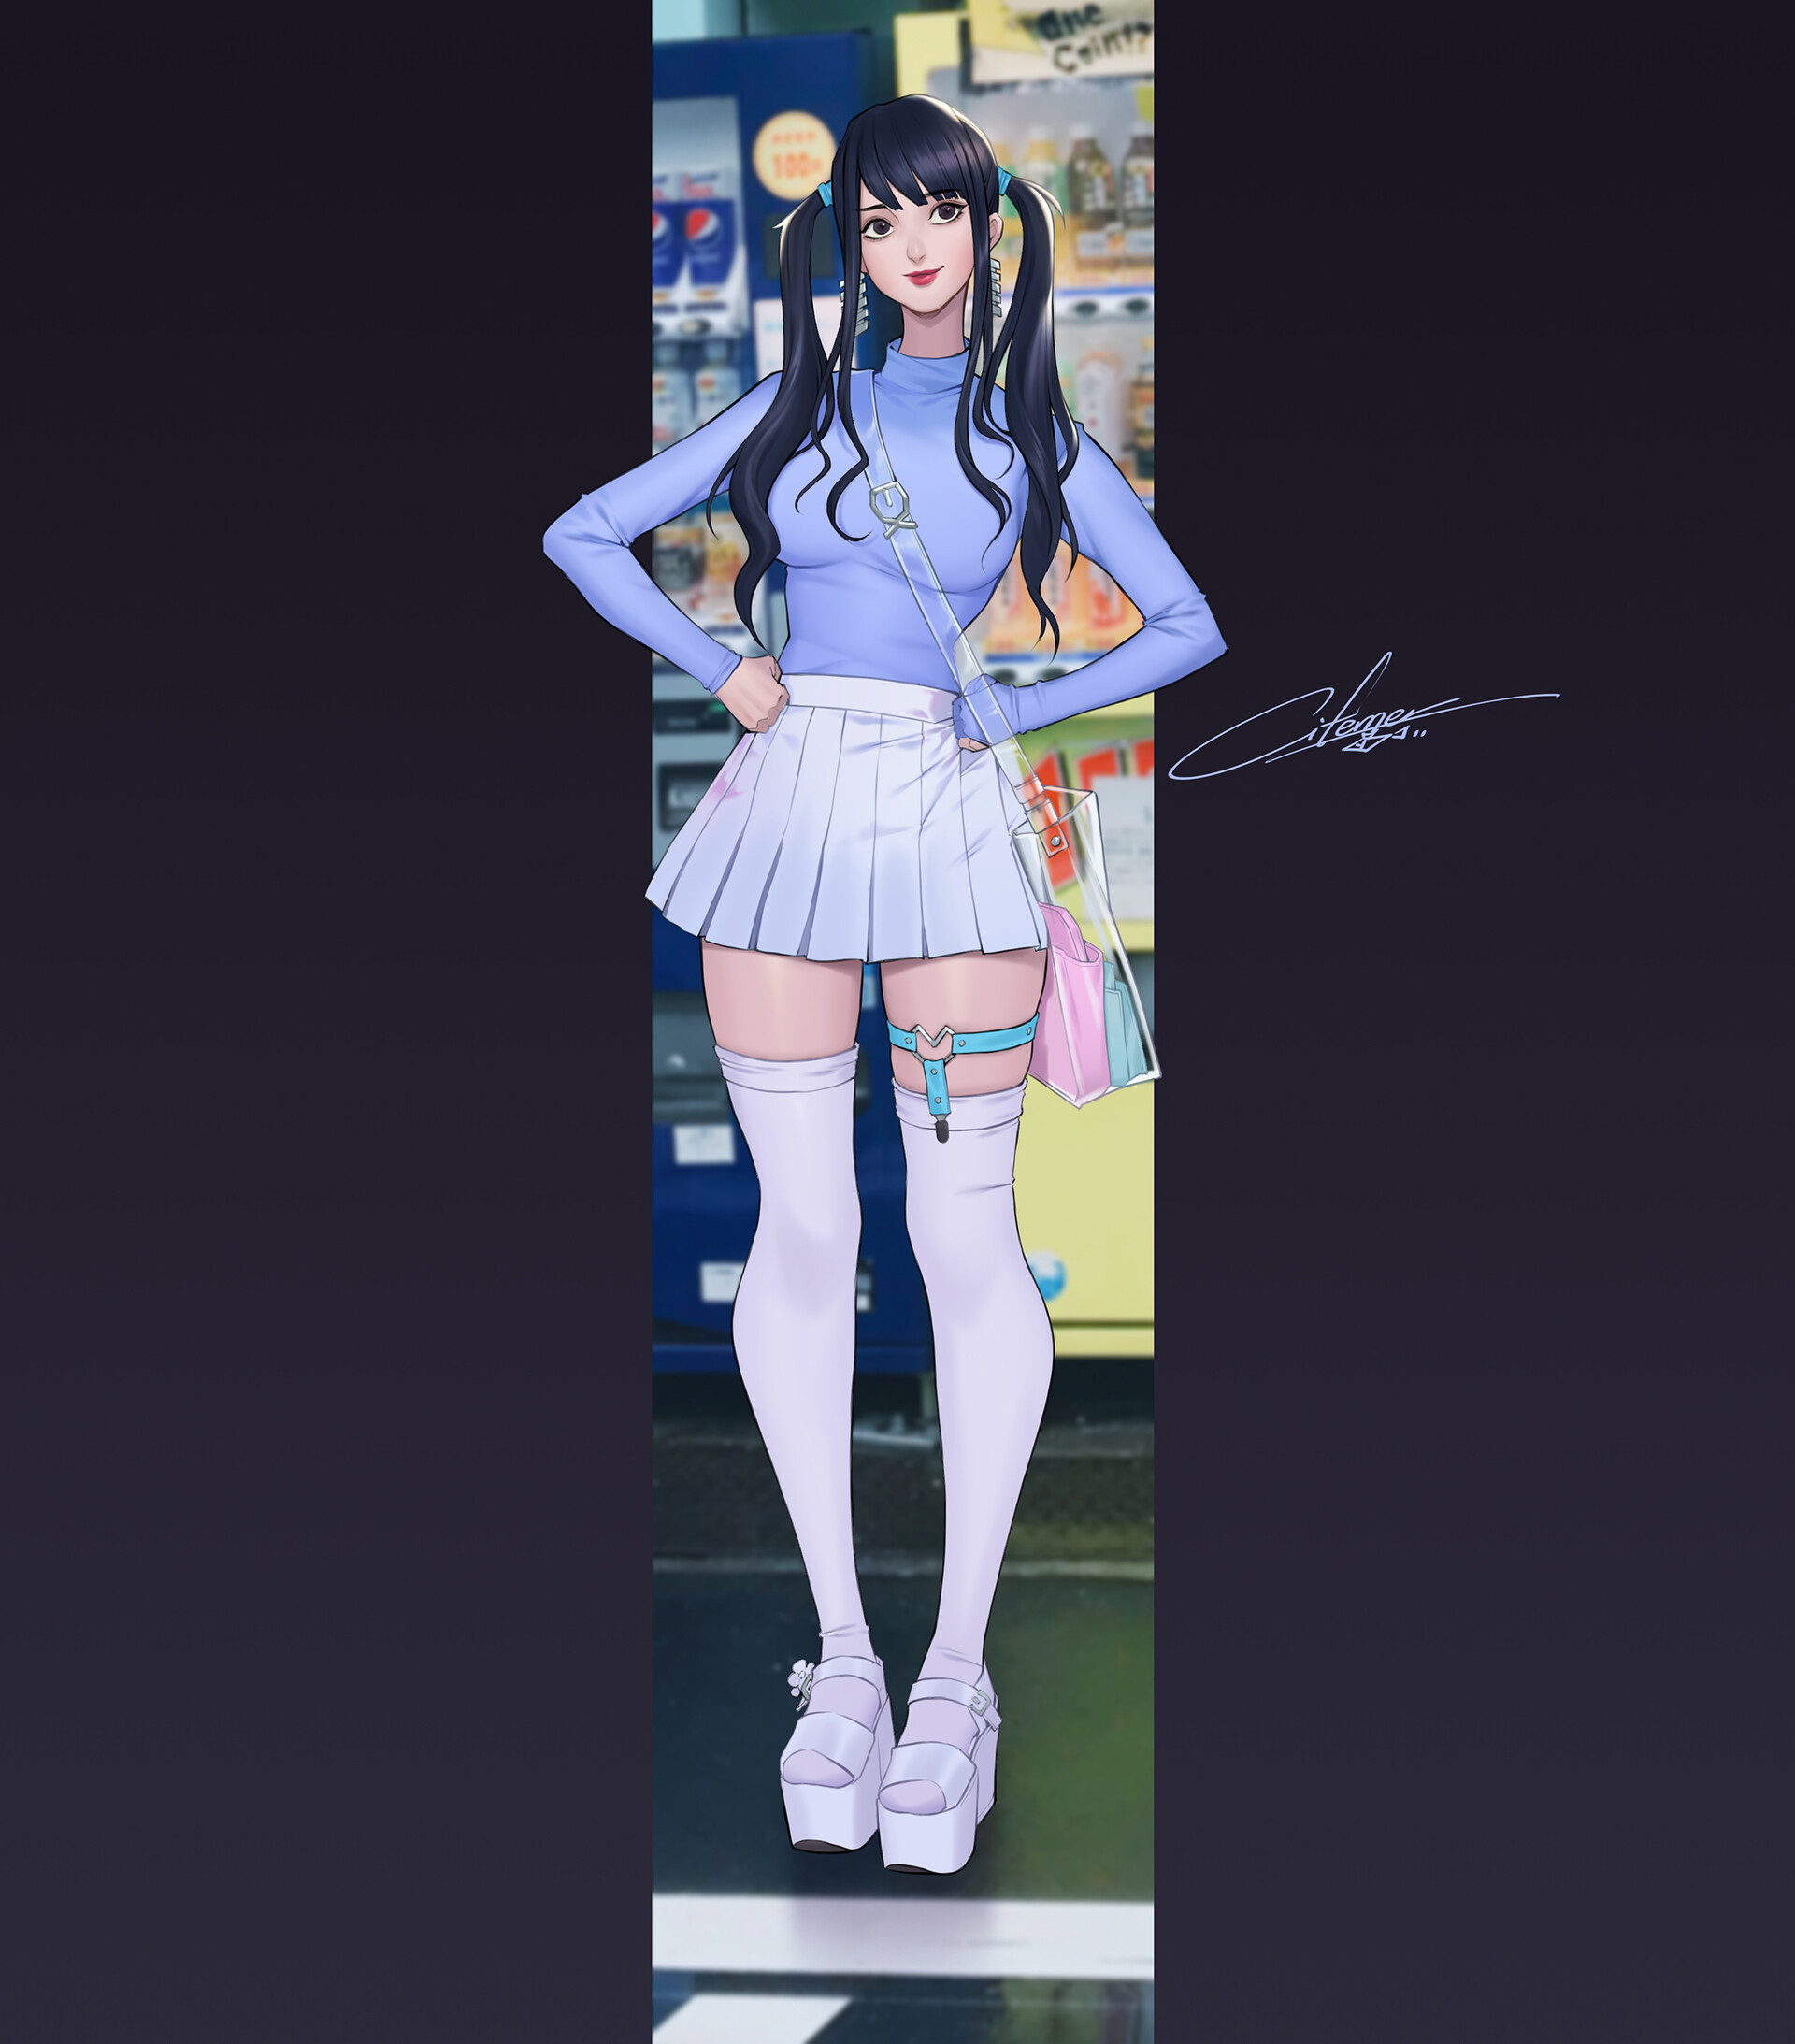 Anime Women Anime Girls Standing White Shoes Skirt White Skirt Long Hair Dark Hair Red Lipstick 1920x2186